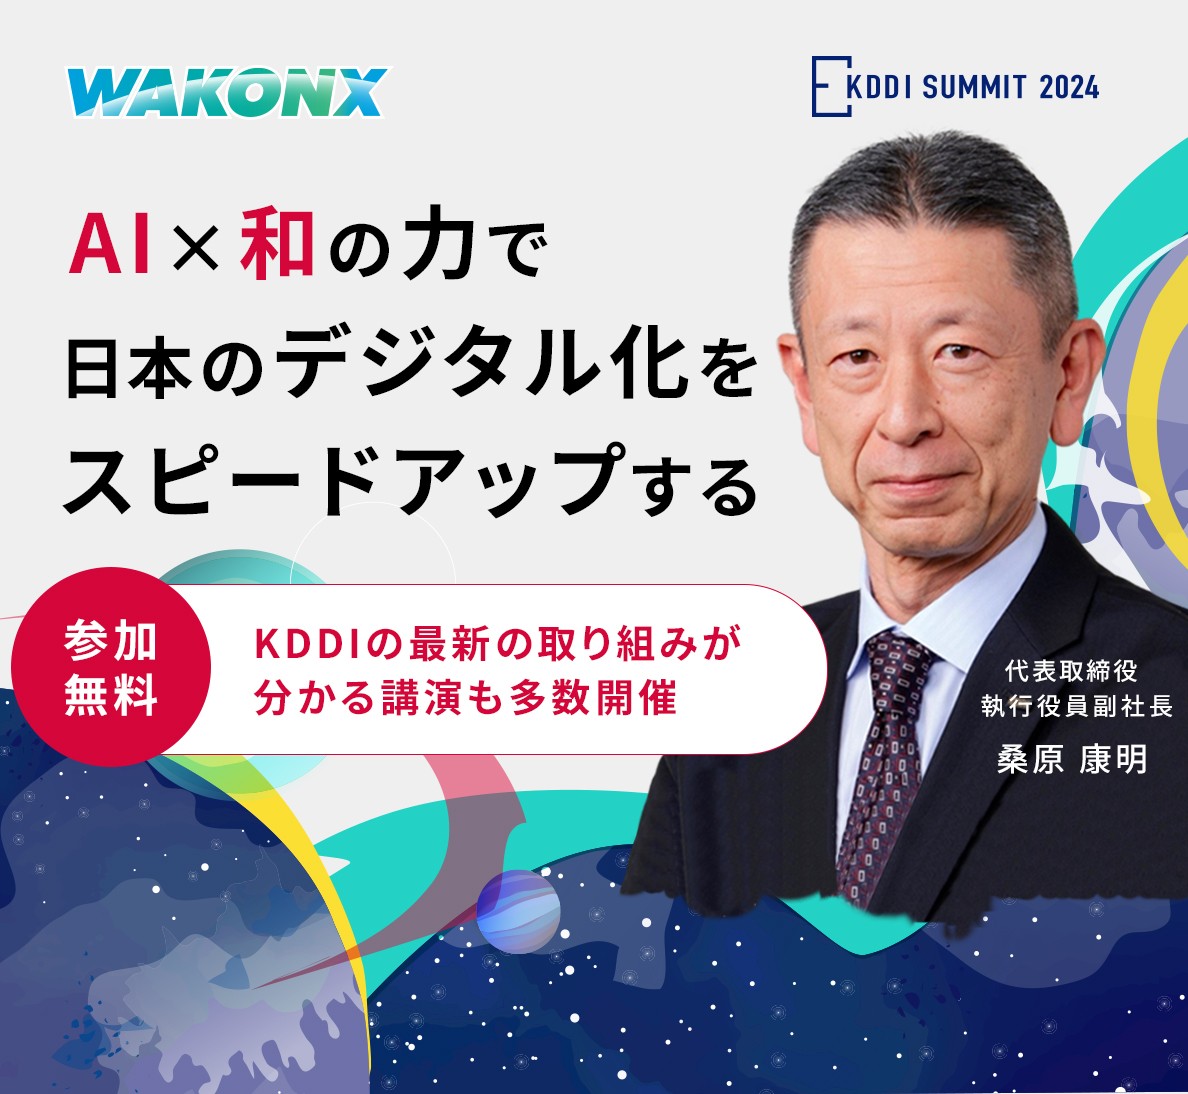 KDDI SUMMIT 2024 AI×和の力で日本のデジタル化をスピードアップする